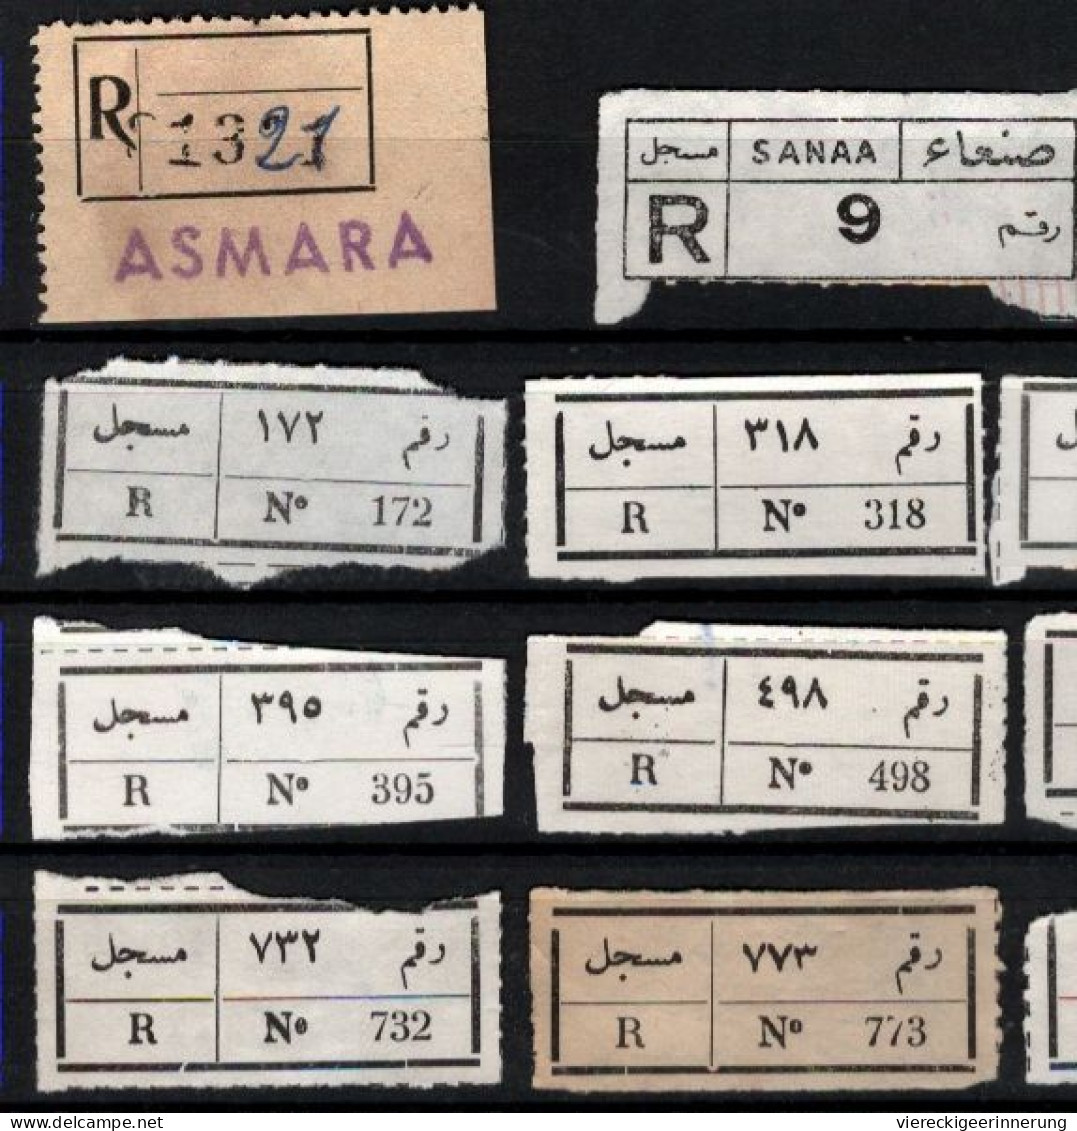 ! 1 Steckkarte Mit 14 R-Zetteln Aus Jemen, Yemen ?, Asmara, Sanaa, Einschreibzettel, Reco Label - Jemen